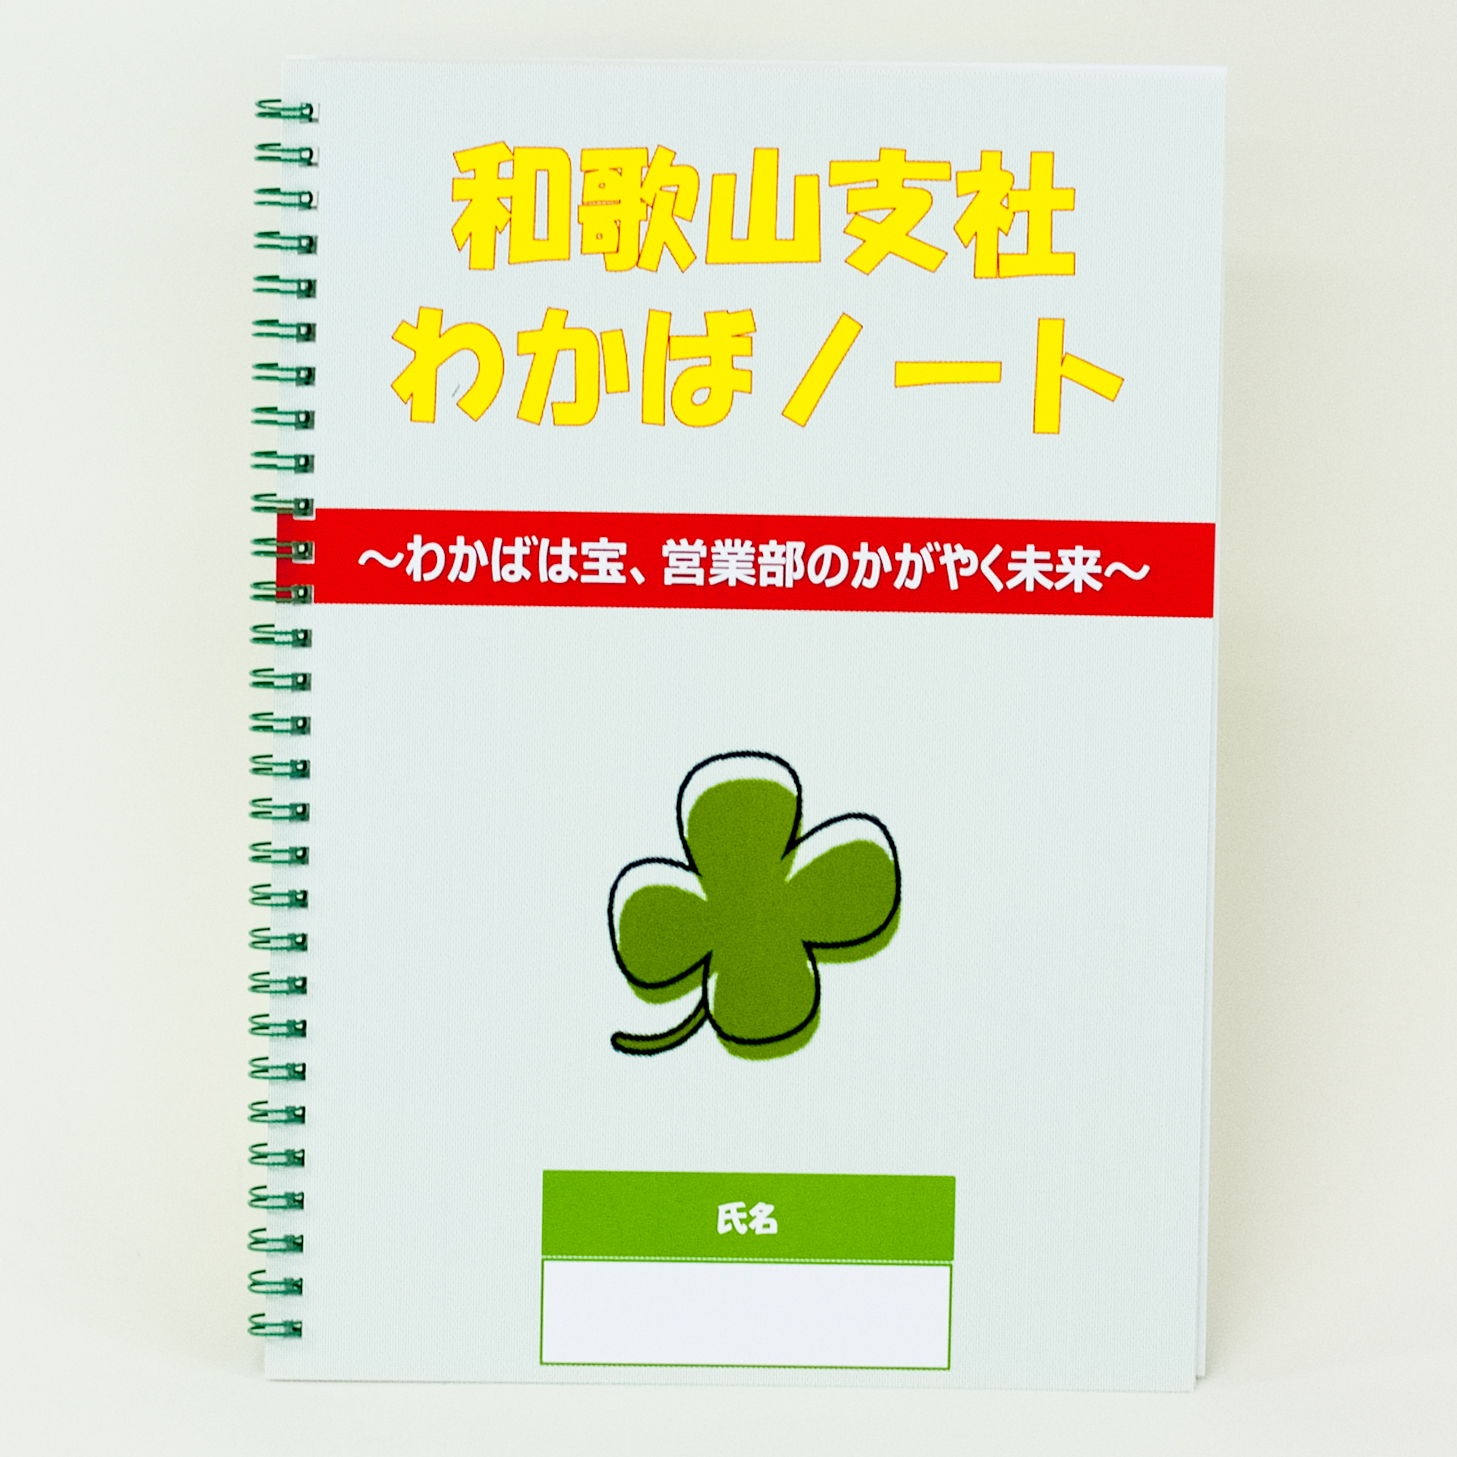 「日本生命保険相互会社 様」製作のオリジナルノート